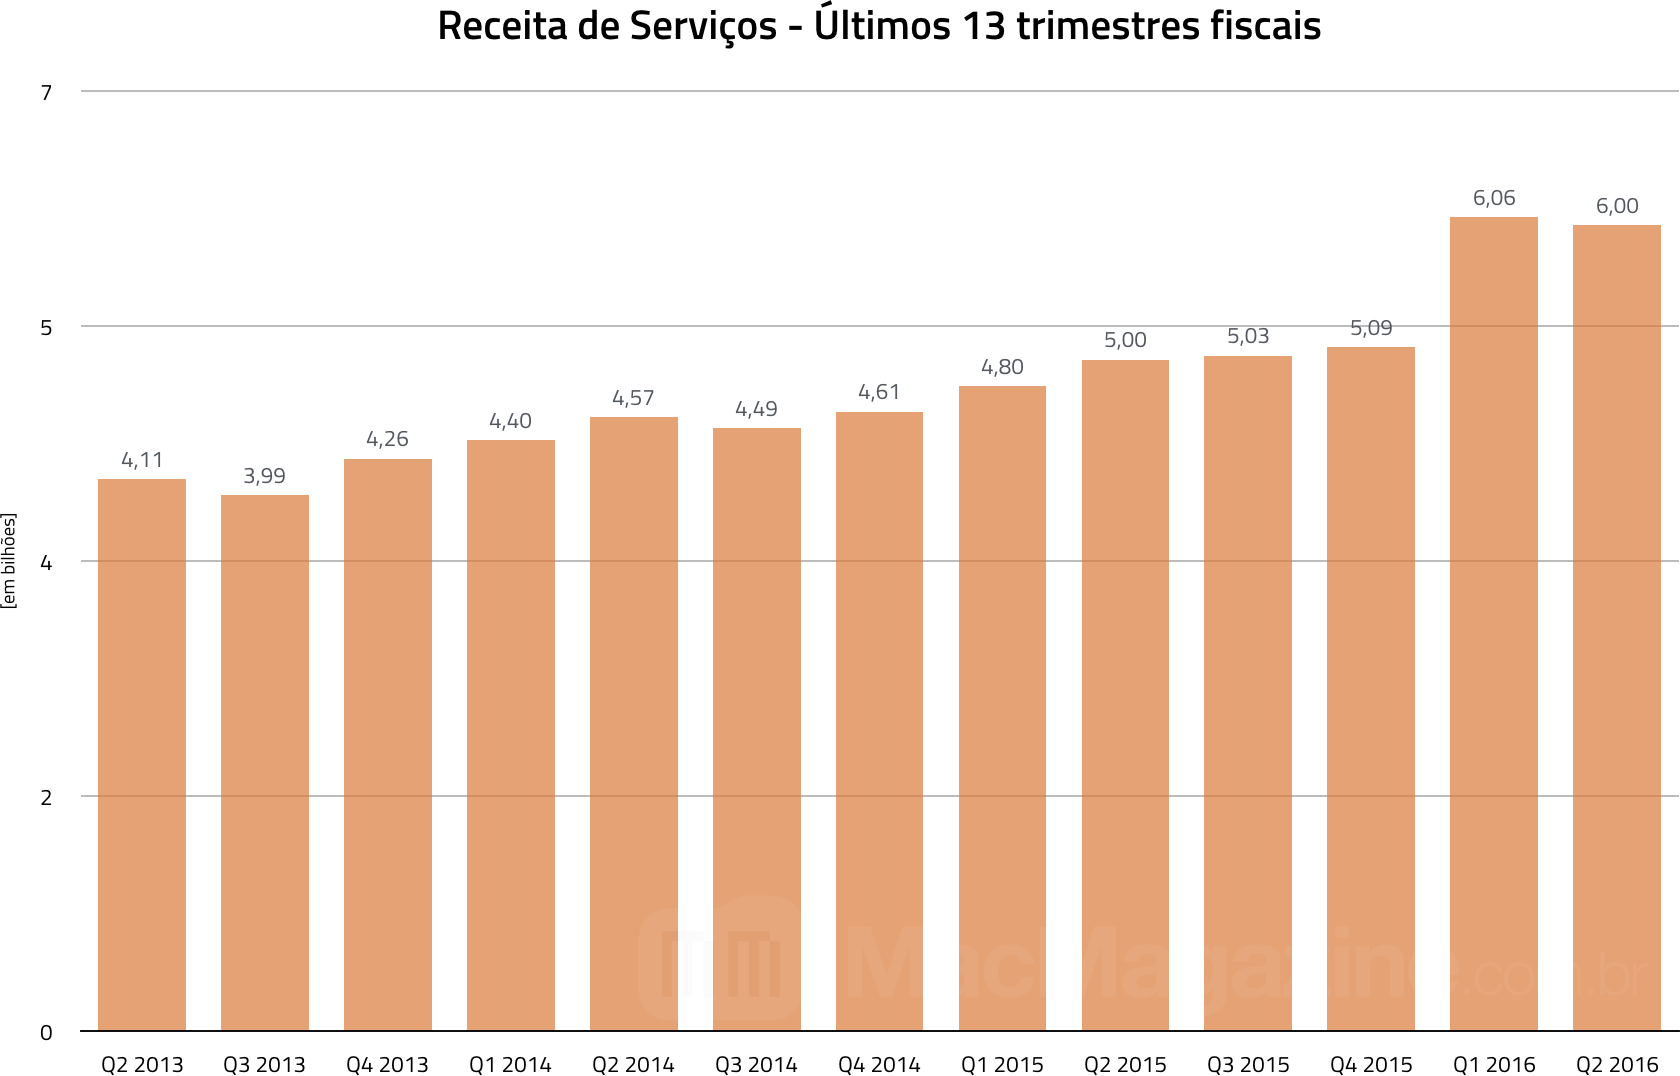 Gráfico das receitas de serviços - Segundo trimestre fiscal de 2016 da Apple